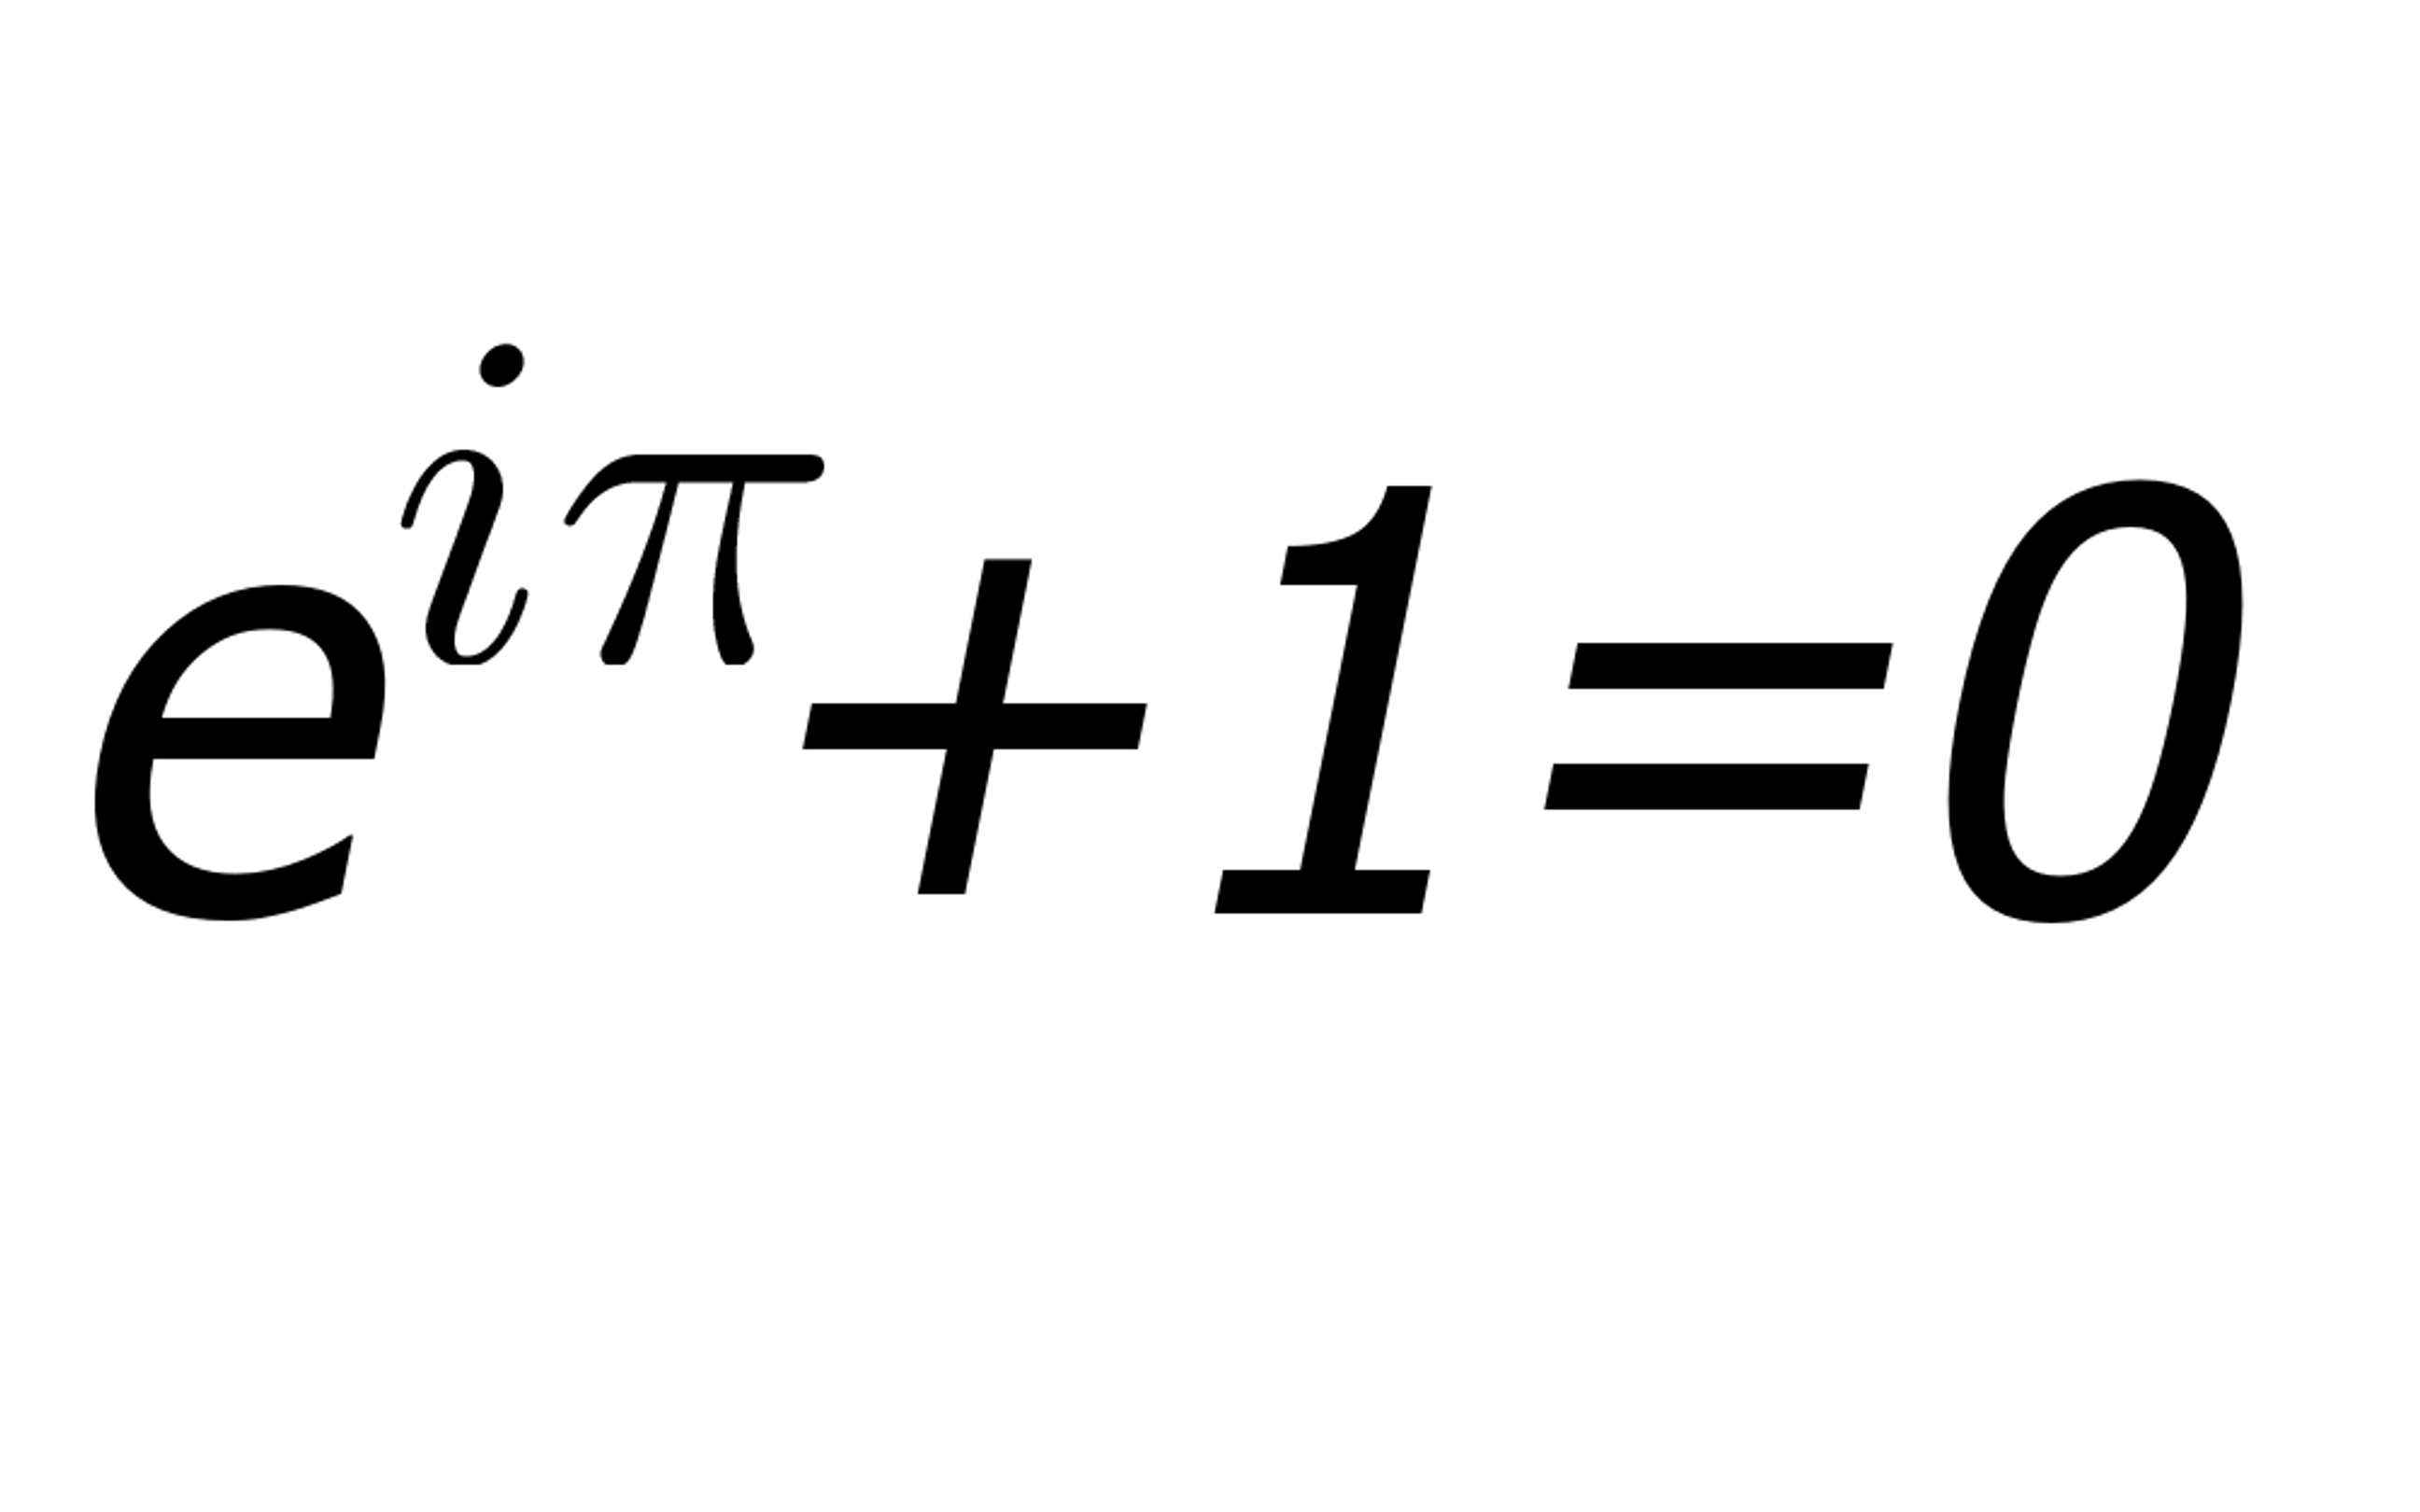 Image of Euler's Identity.